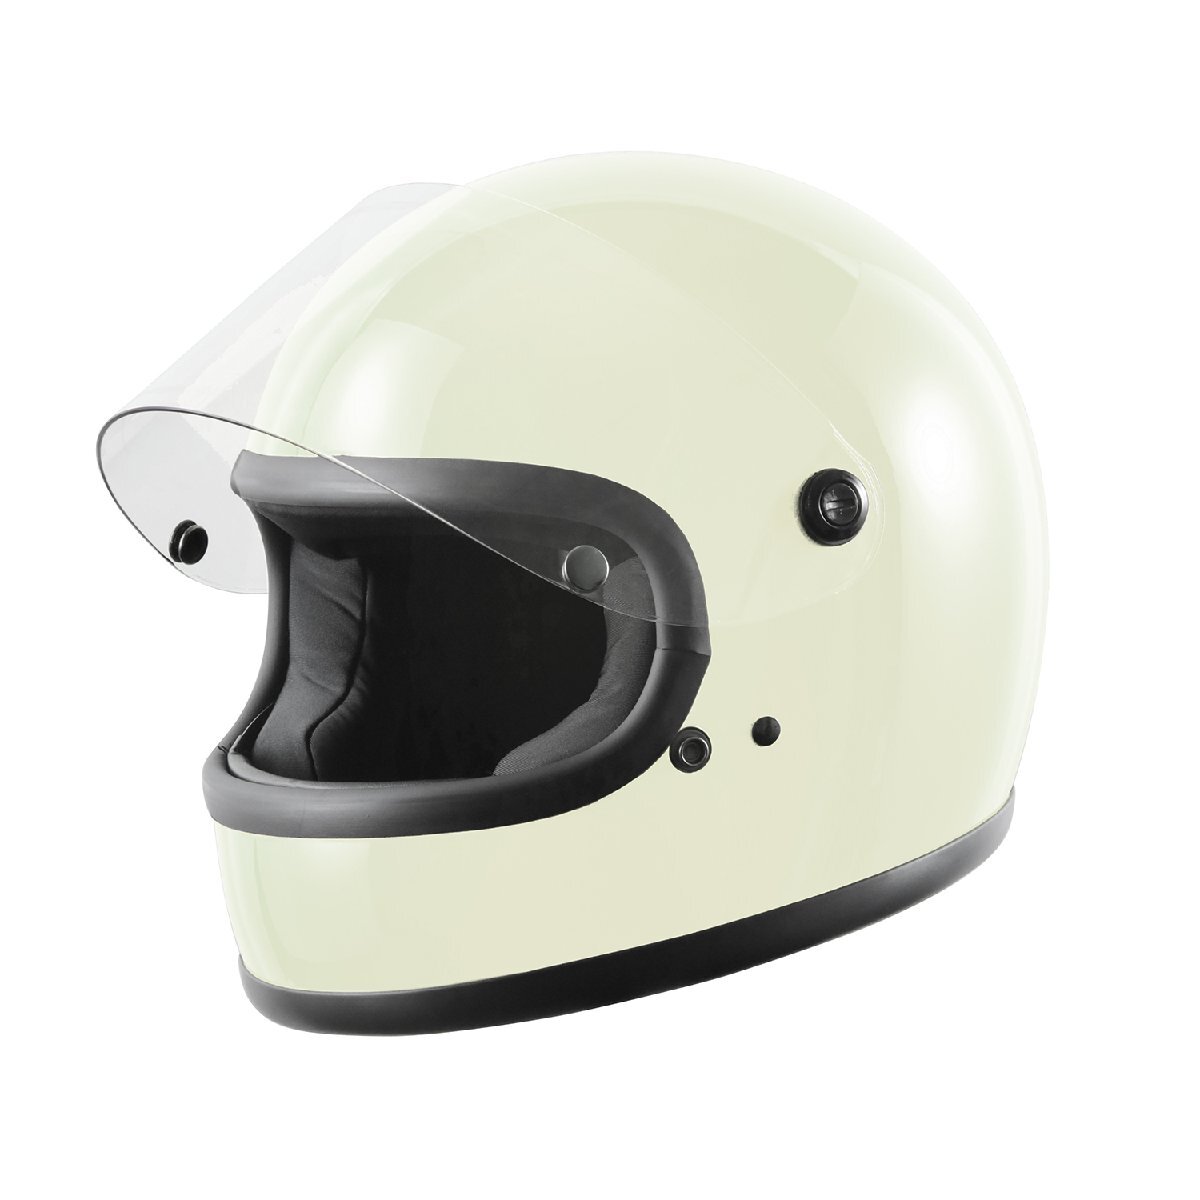 ヘルメット フルフェイス ホワイト ビンテージ レトロ 族ヘル 新品 SG・PSCマーク取得 全排気量対応 バイクパーツセンターの画像2